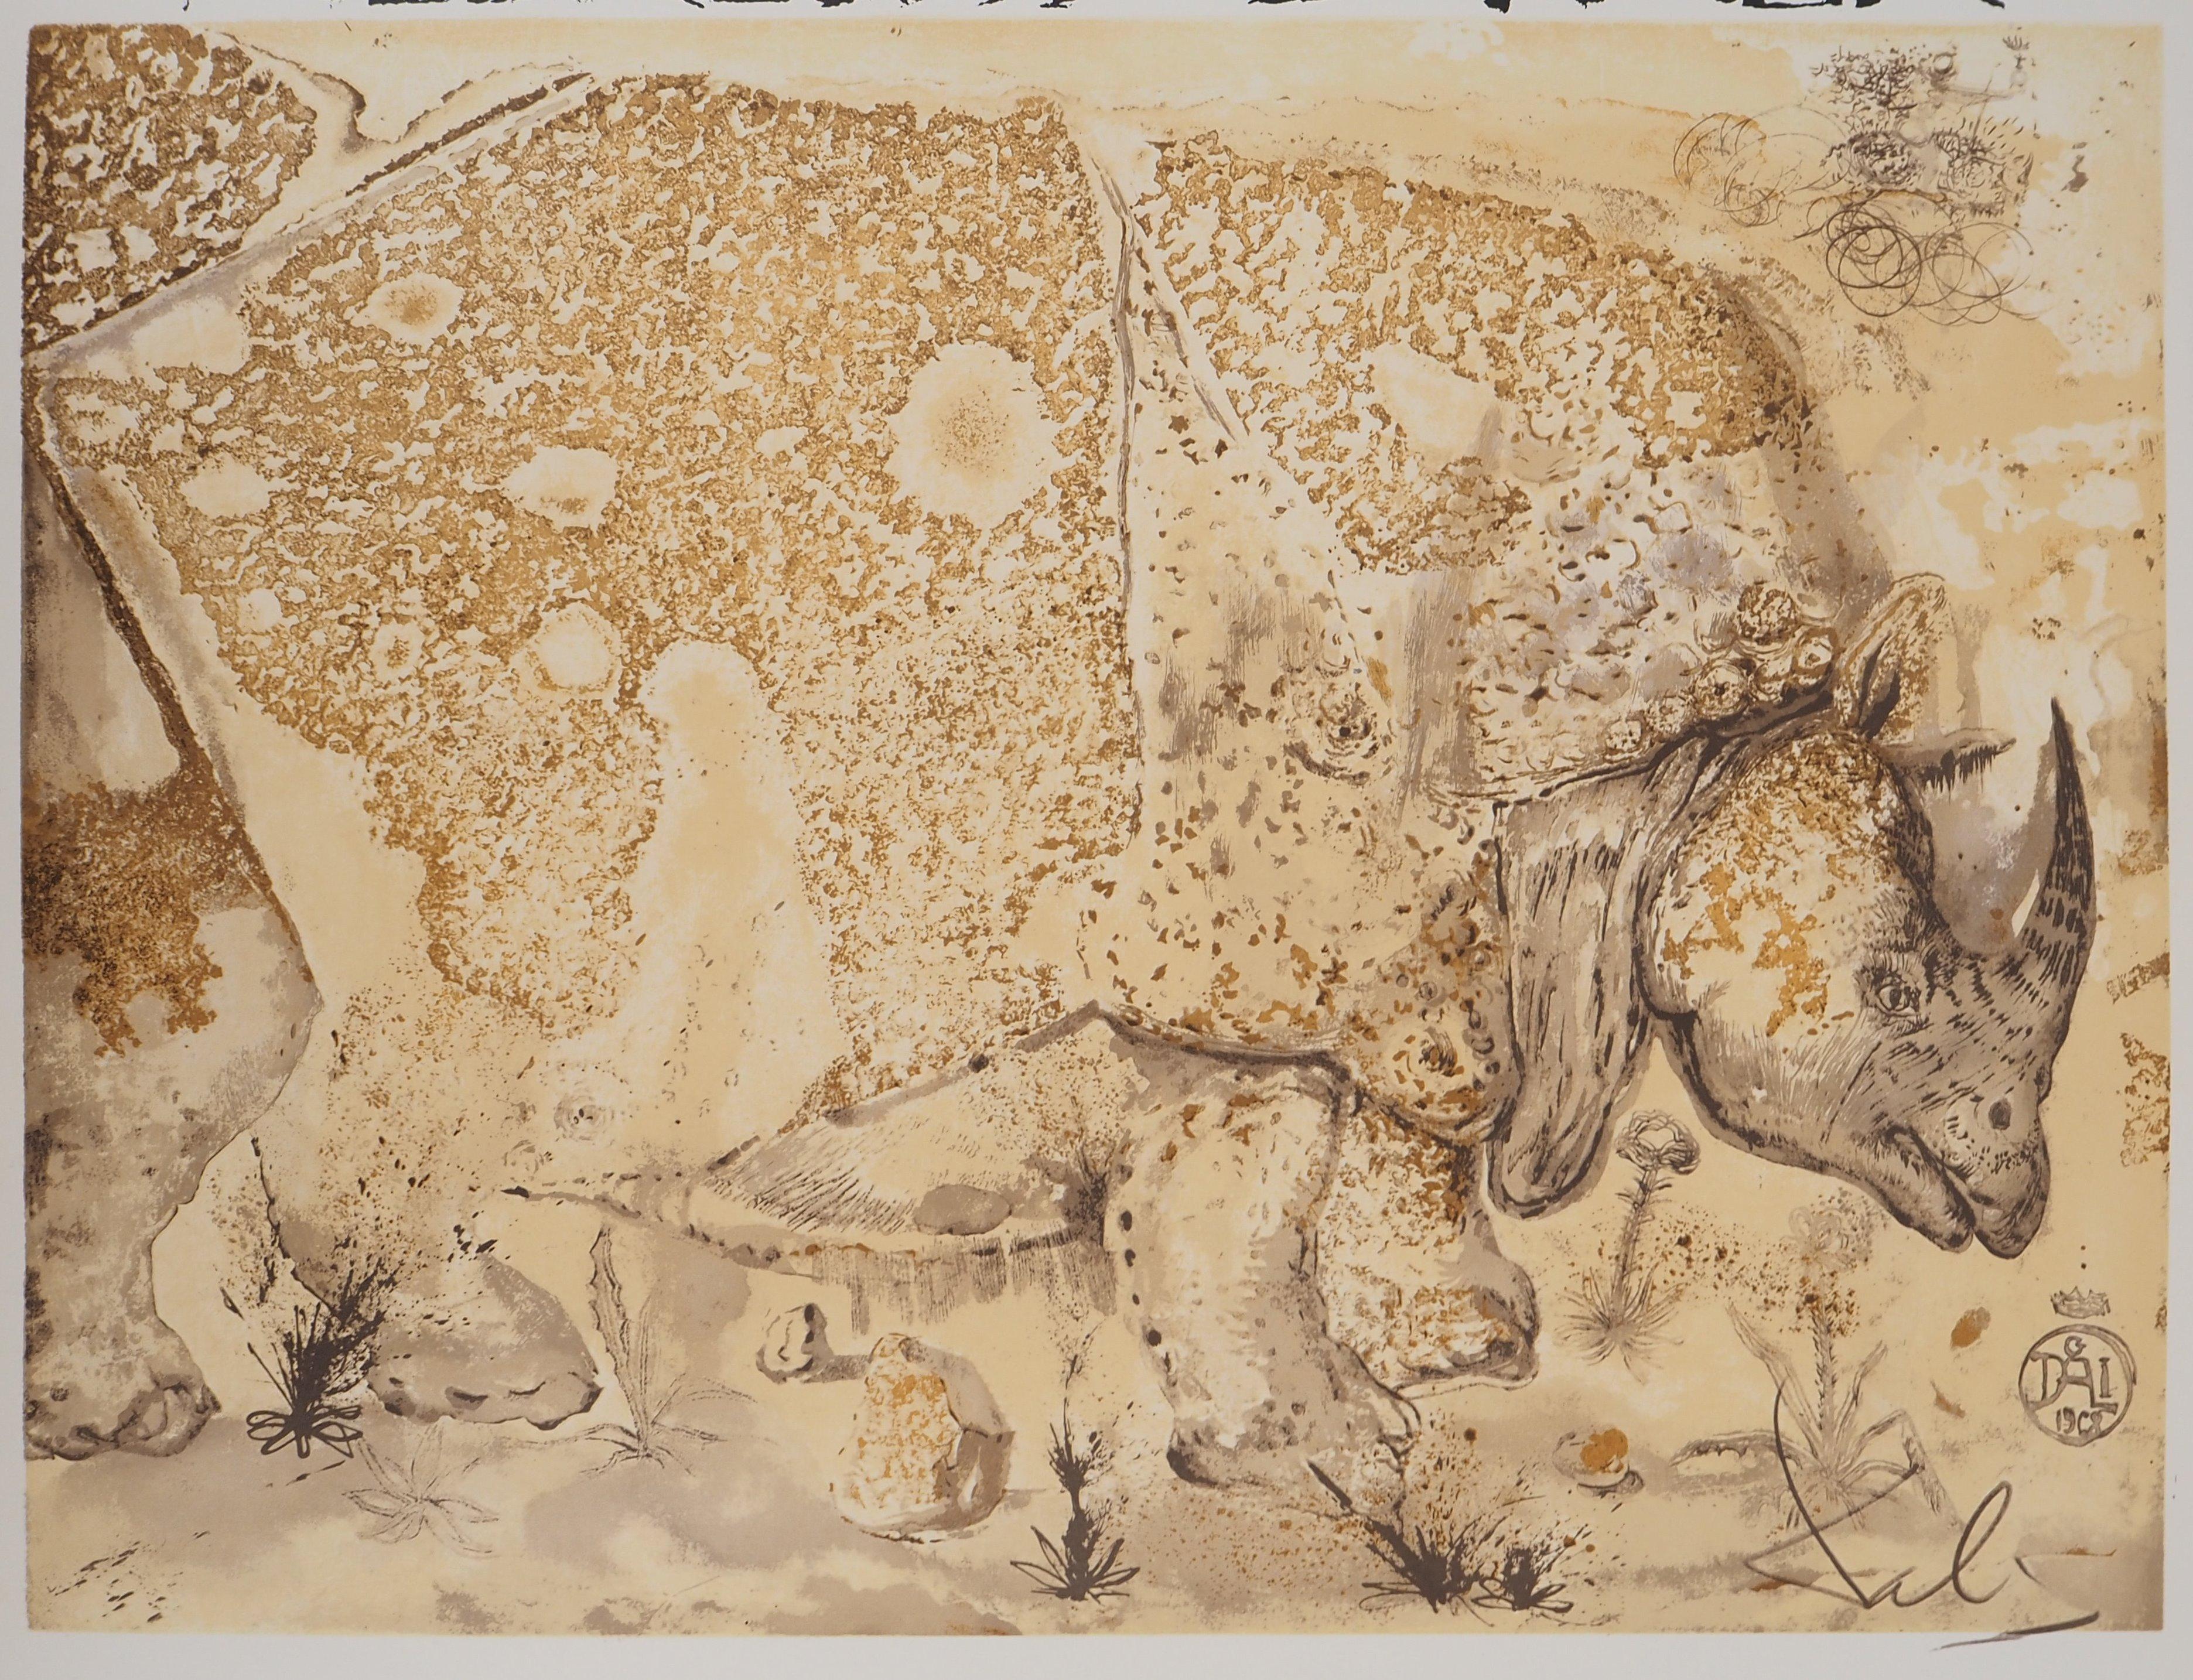 Rhinoceros, Tribute to Albrecht DURER - Original lithograph poster (Gaspar #1503 - Print by Salvador Dalí